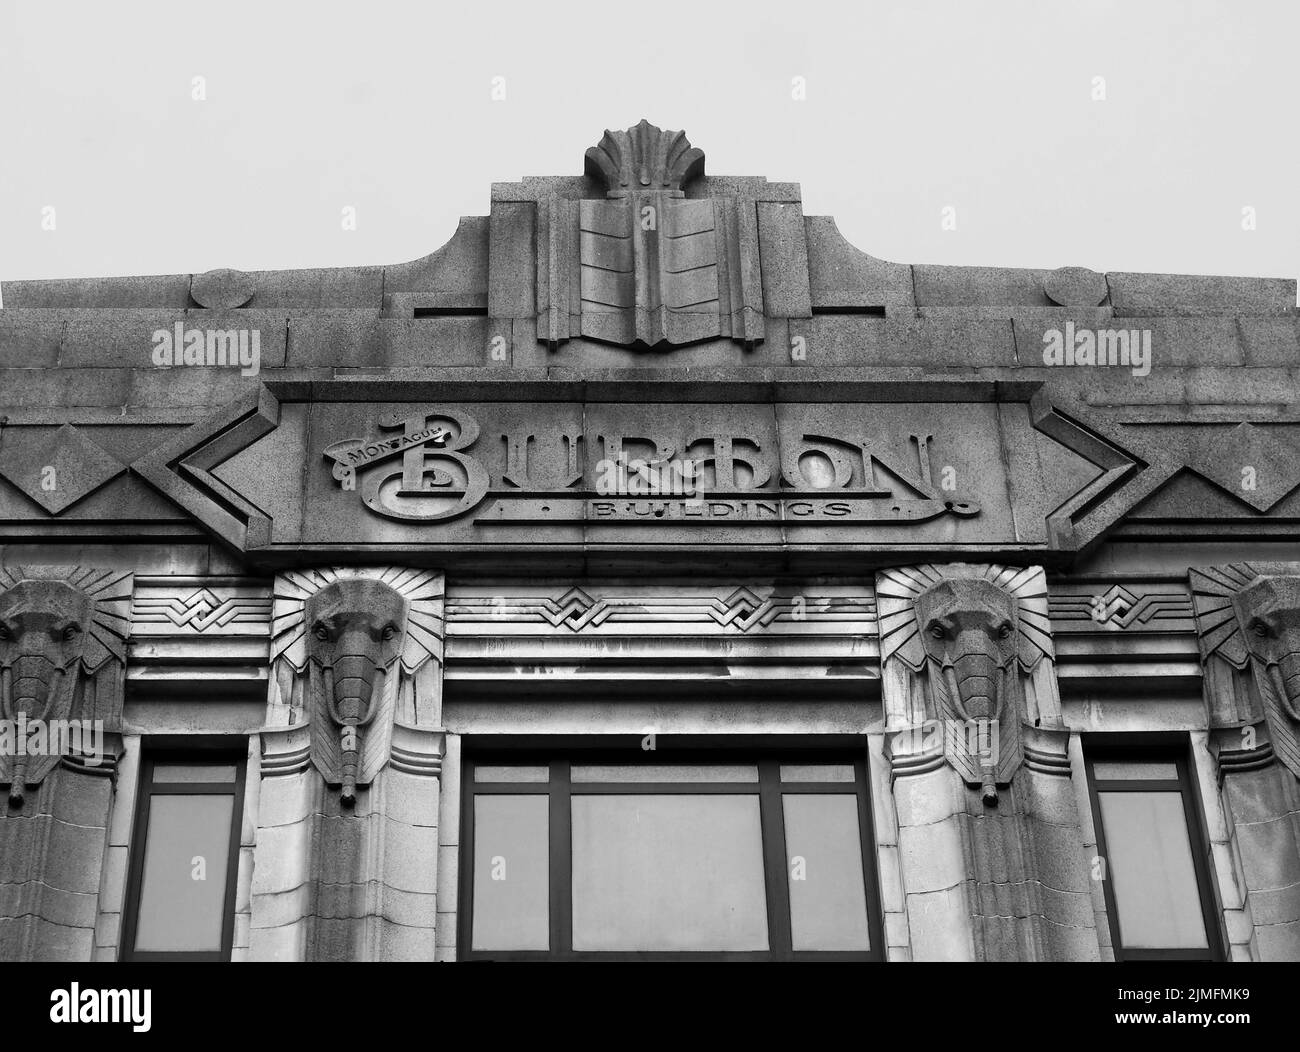 El elefante de marca y estilo art deco se dirige sobre los antiguos edificios montague burton en halifax, al oeste de yorkshire Foto de stock